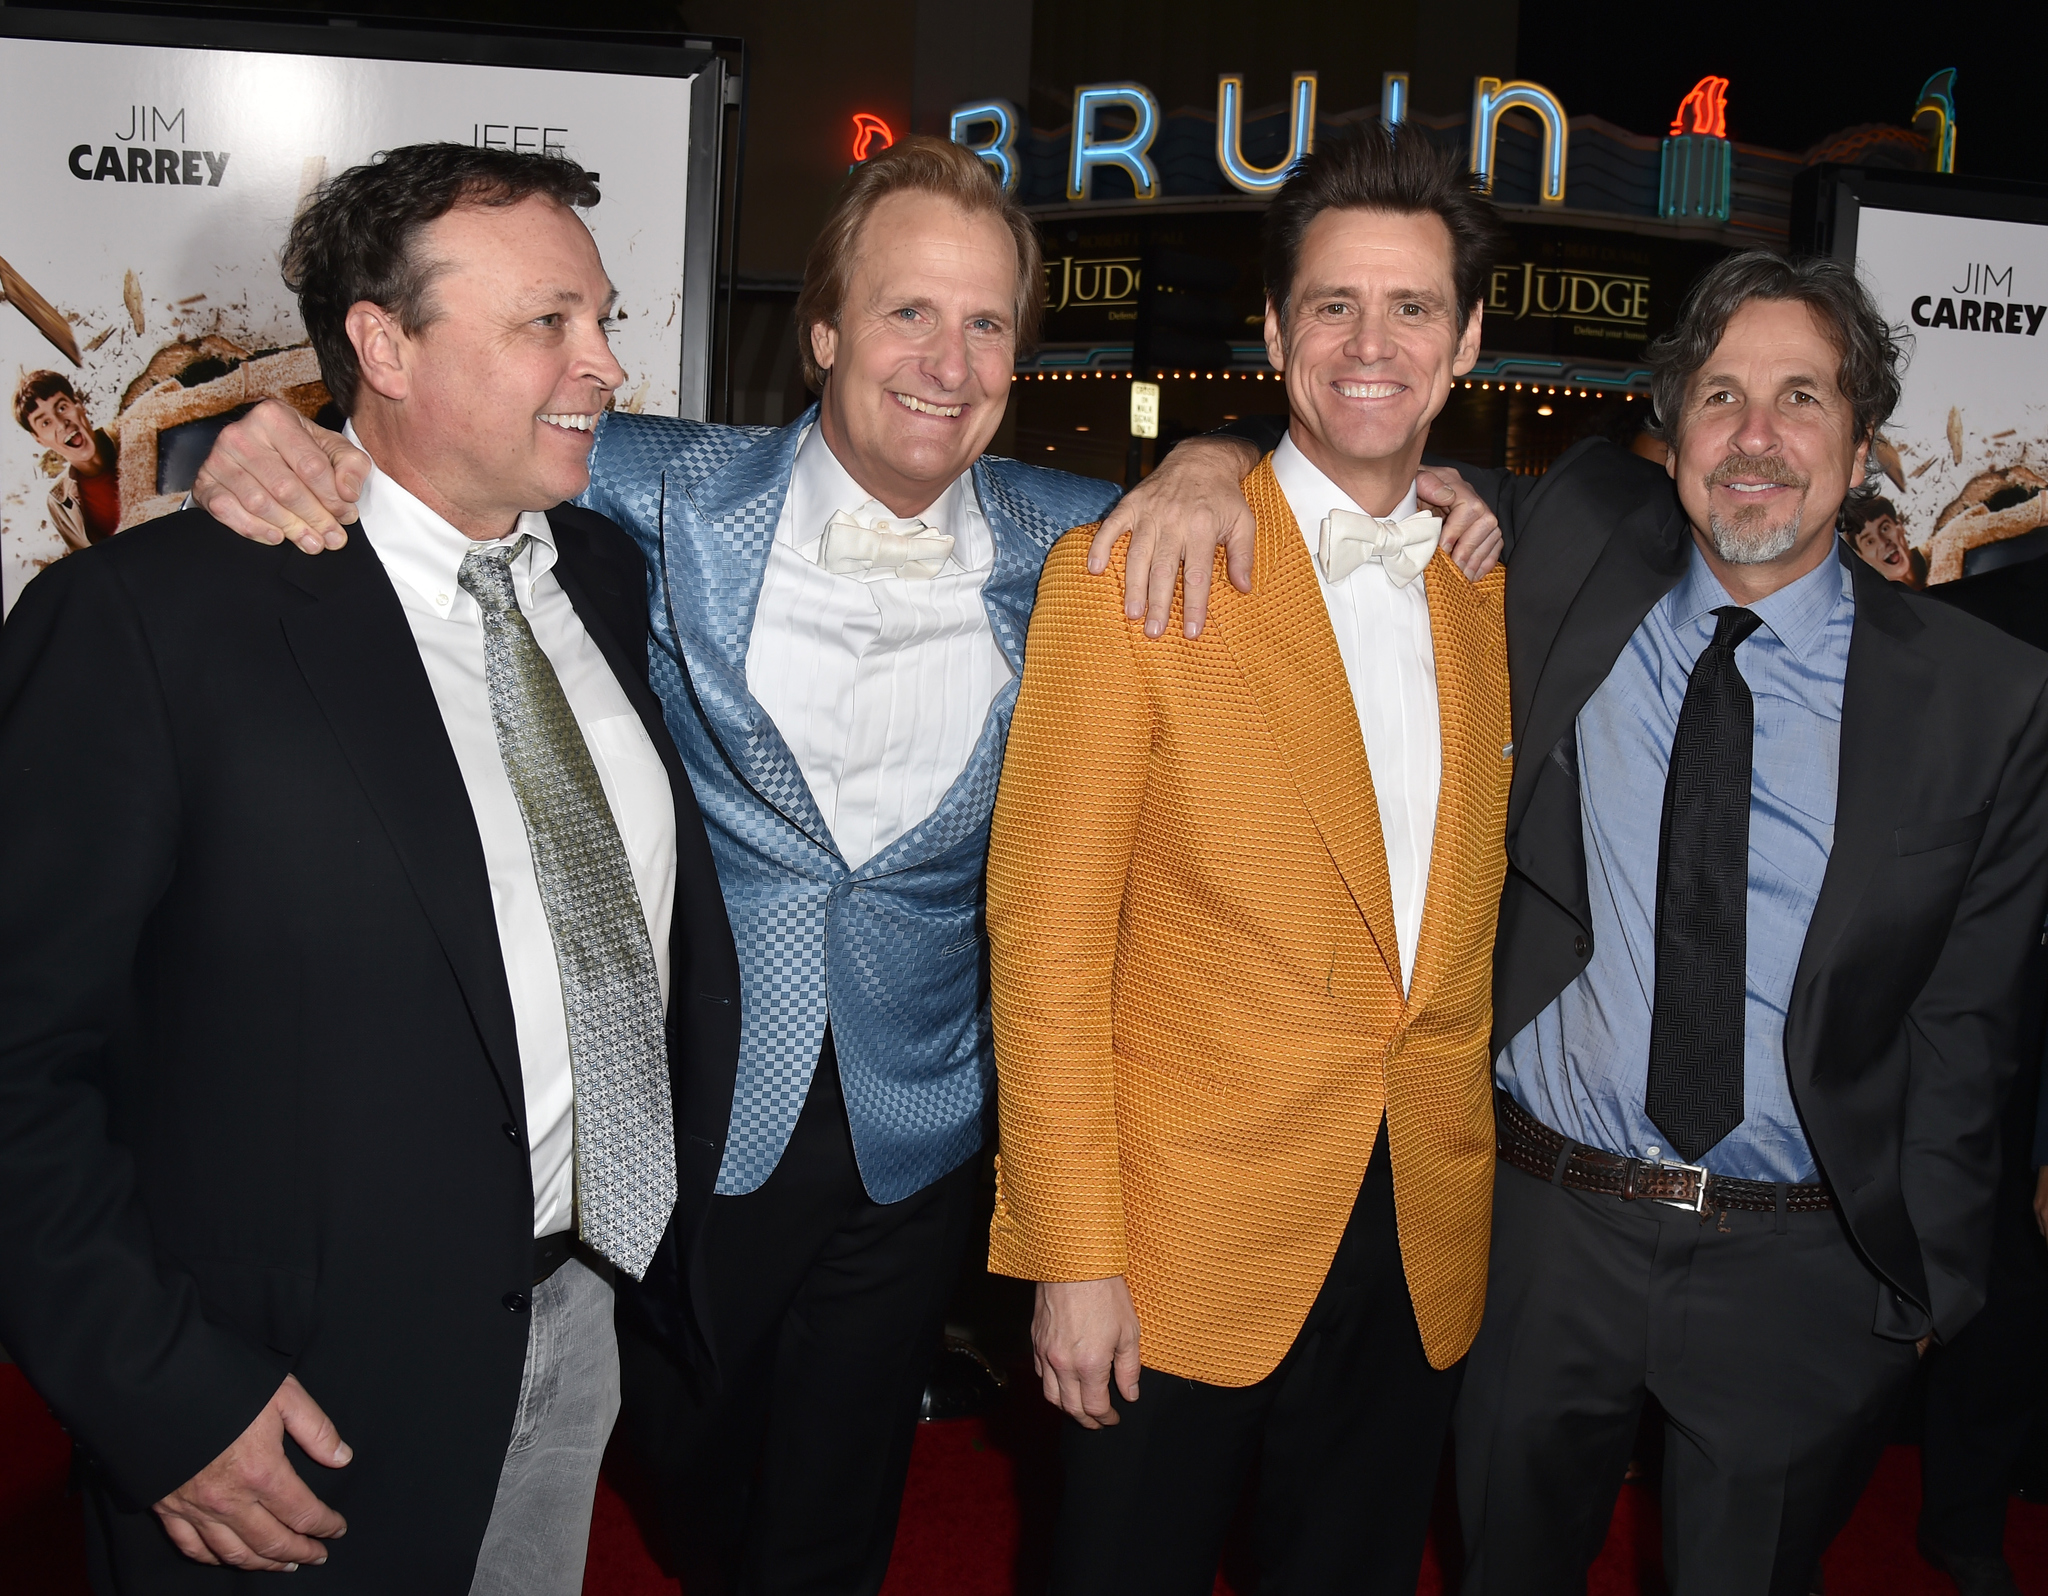 Jim Carrey, Jeff Daniels, Bobby Farrelly and Peter Farrelly at event of Bukas ir bukesnis 2 (2014)